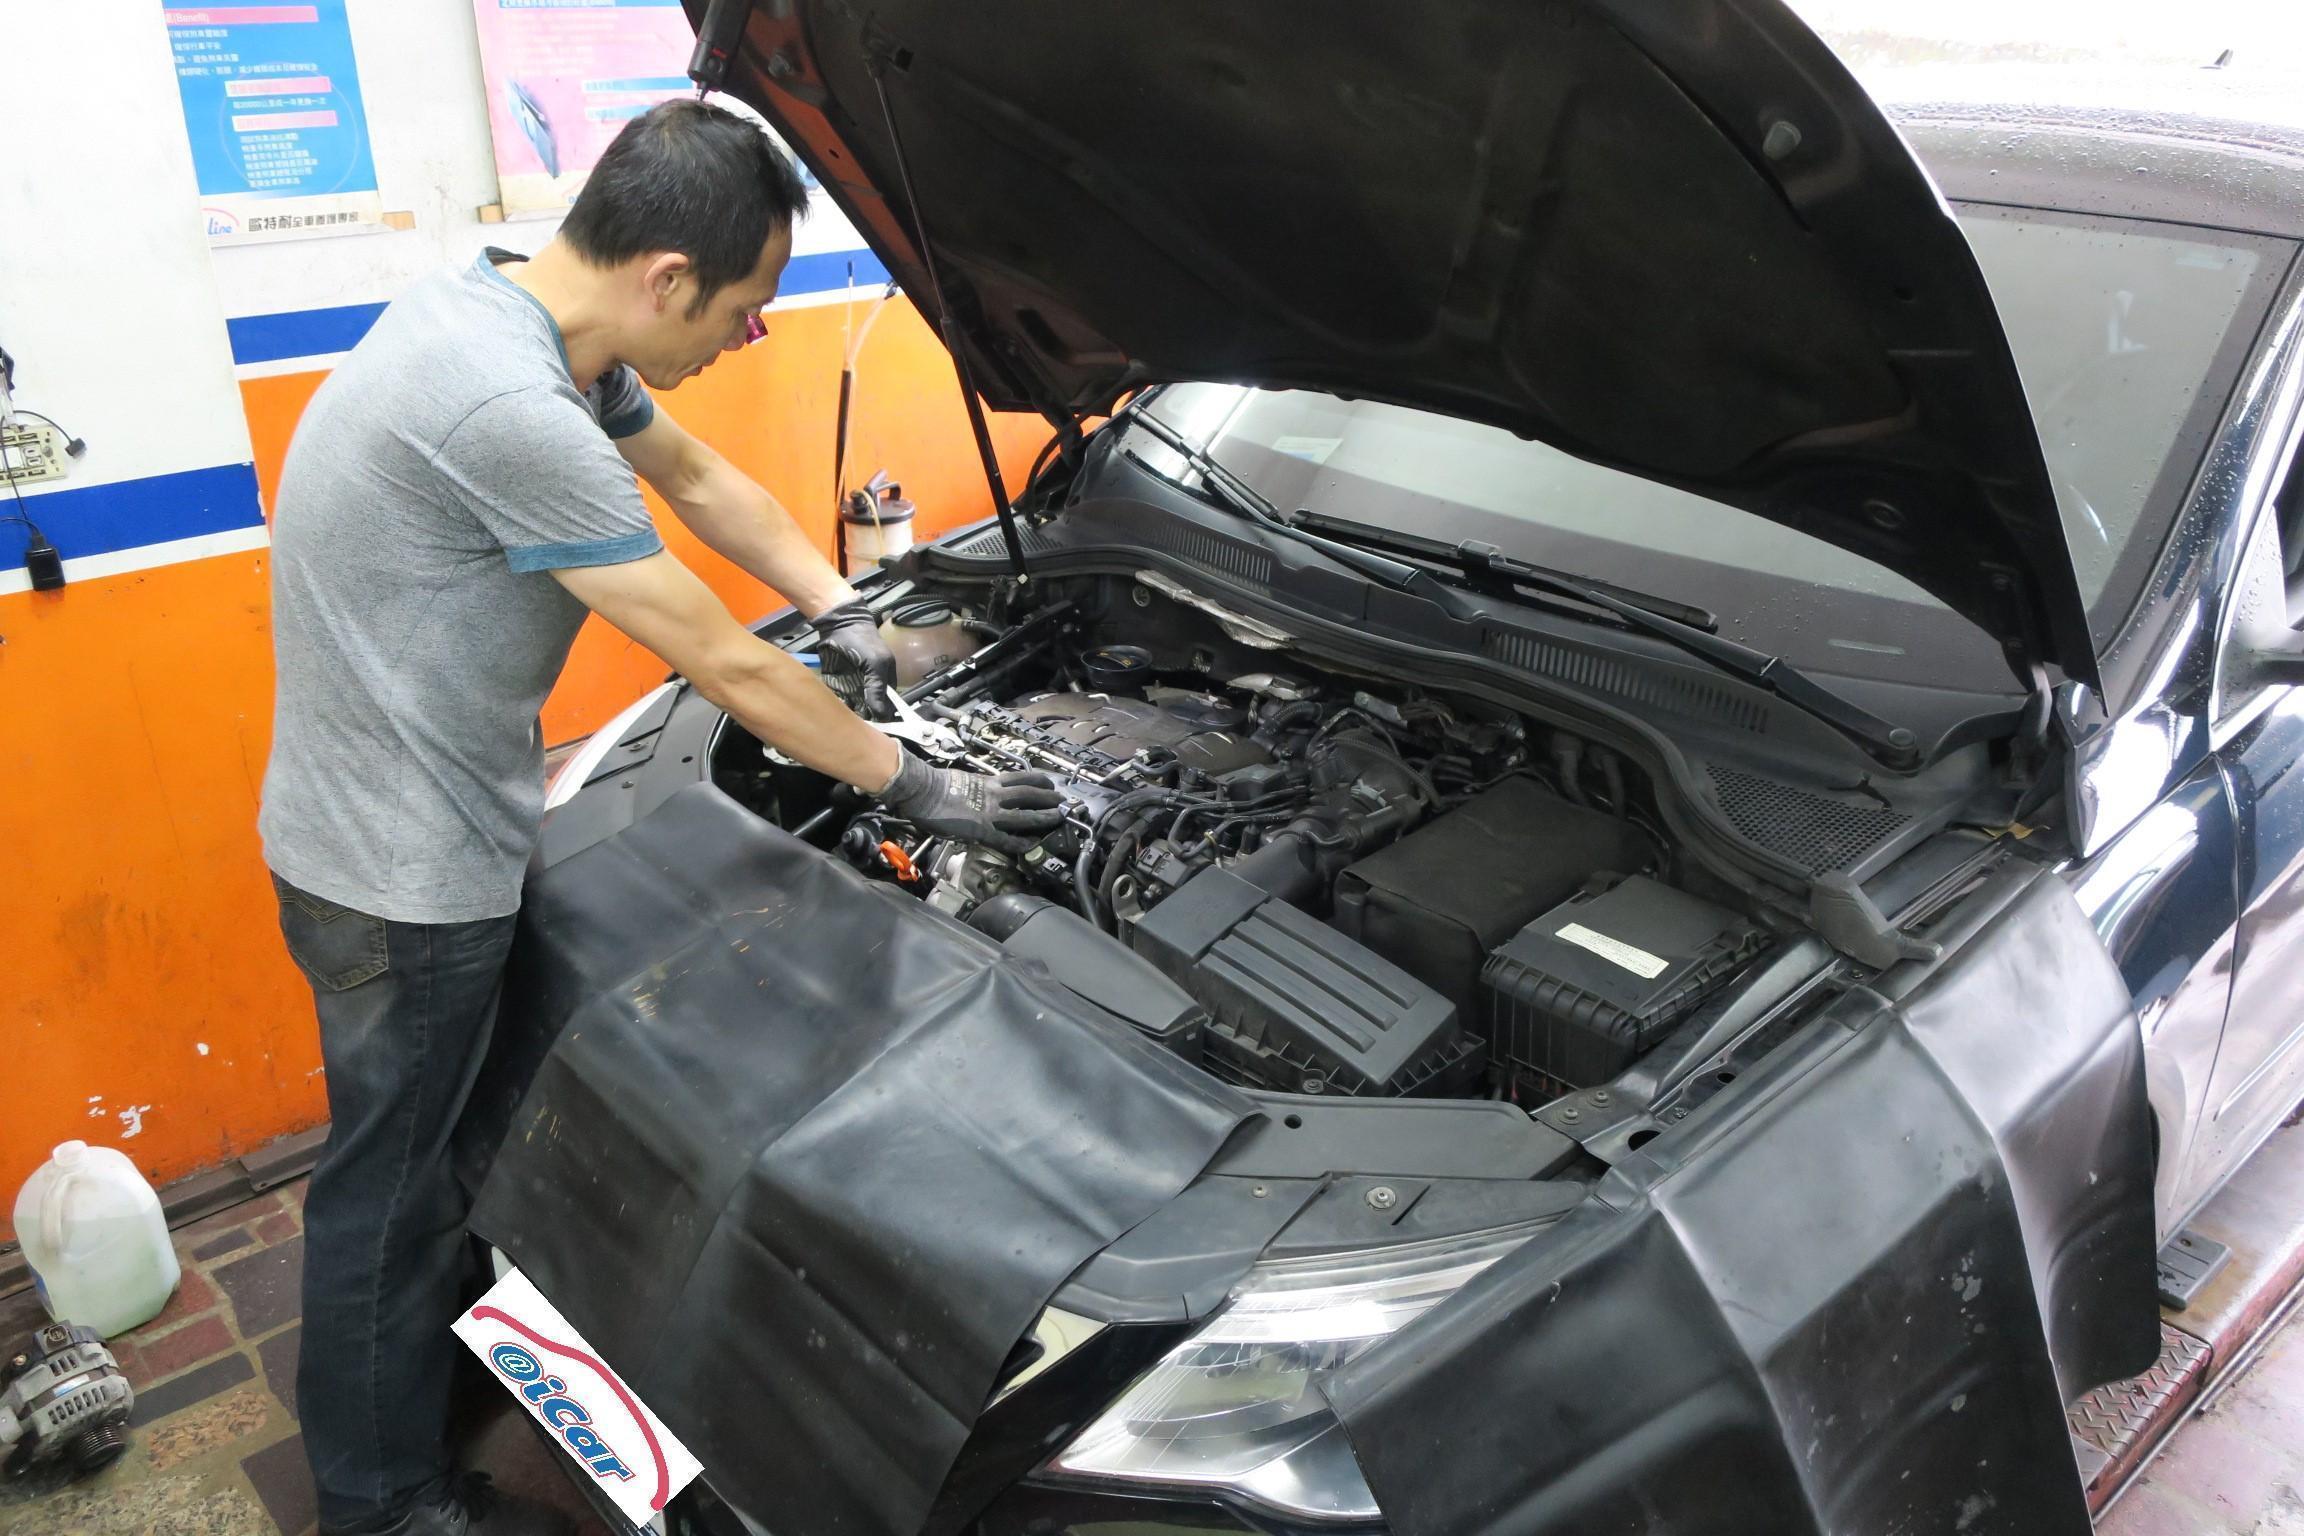 VW PASSAT引擎點火系統查修情況。